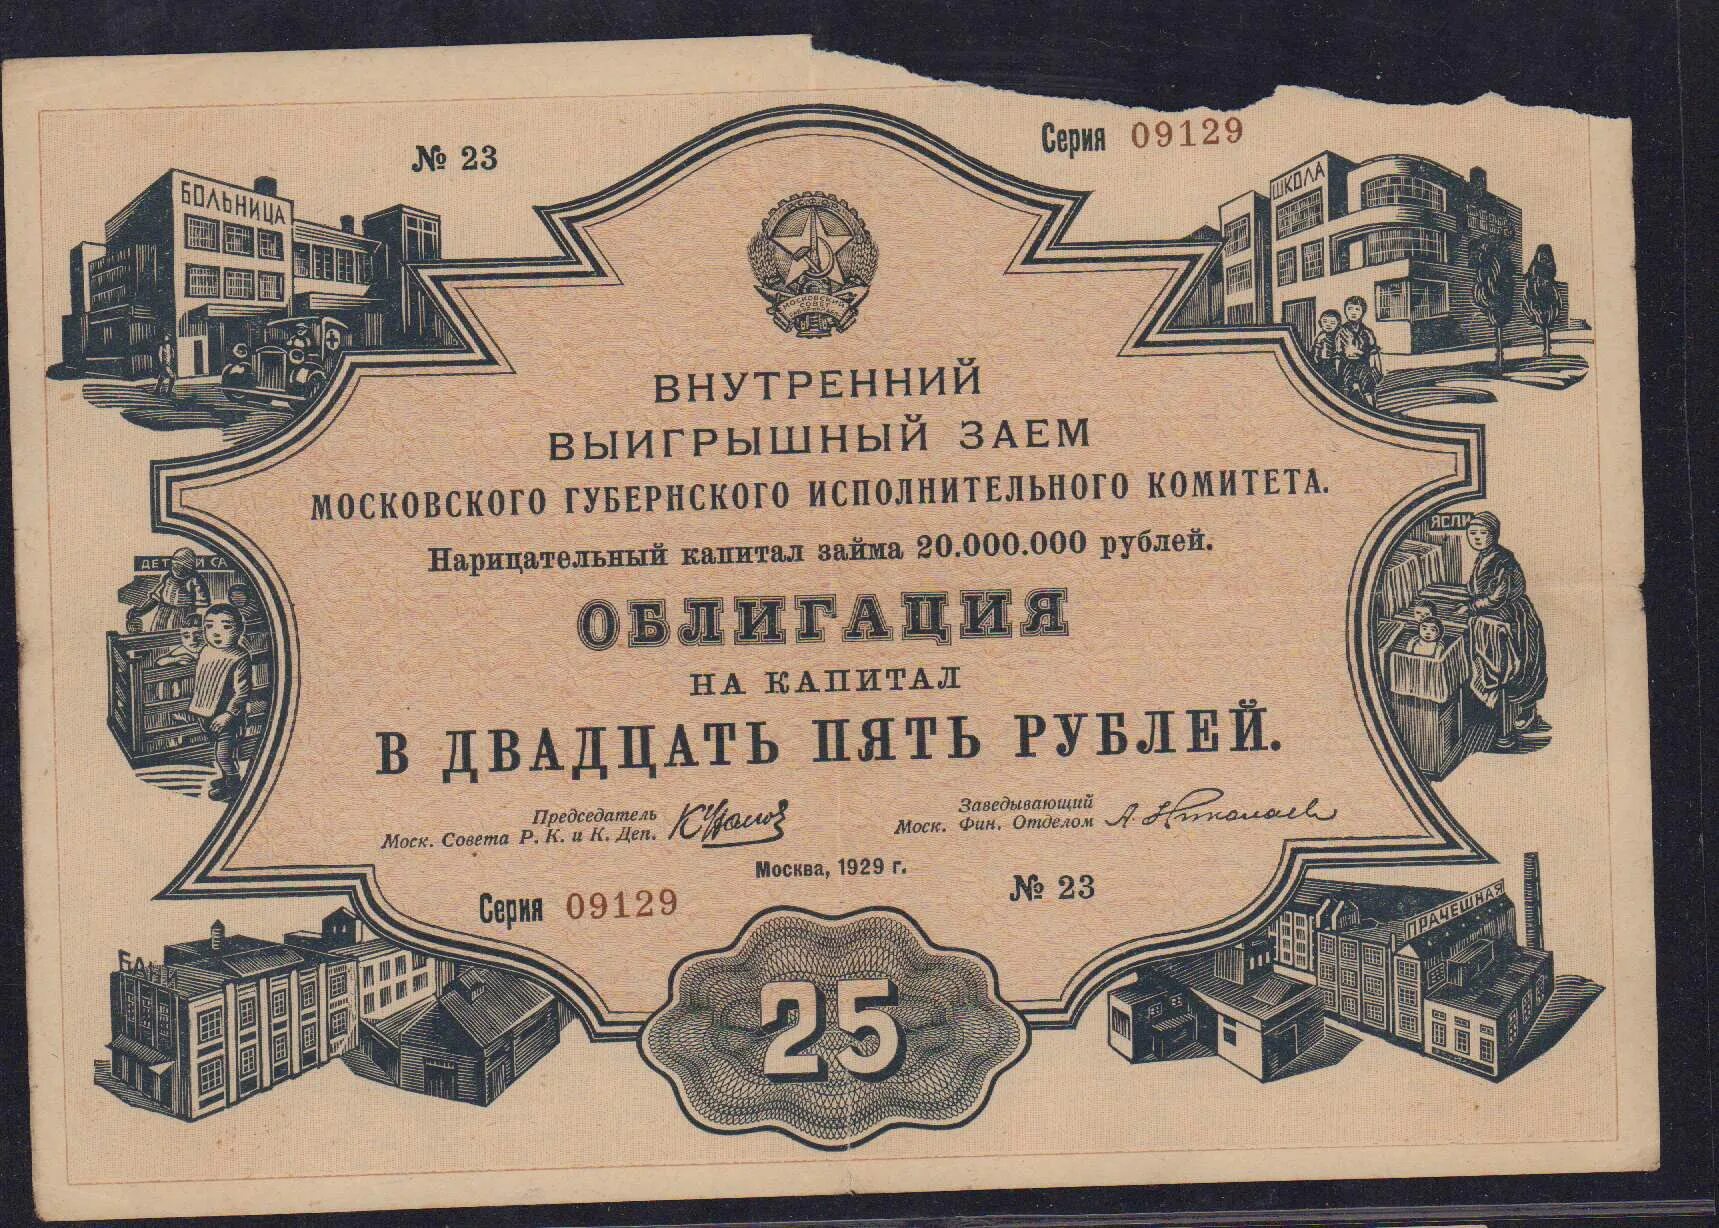 Займа 50 рублей. Облигации выигрышного займа. Выигрышный заём. Облигация 25 рублей 1982. Государственный внутренний заем 1929 года.